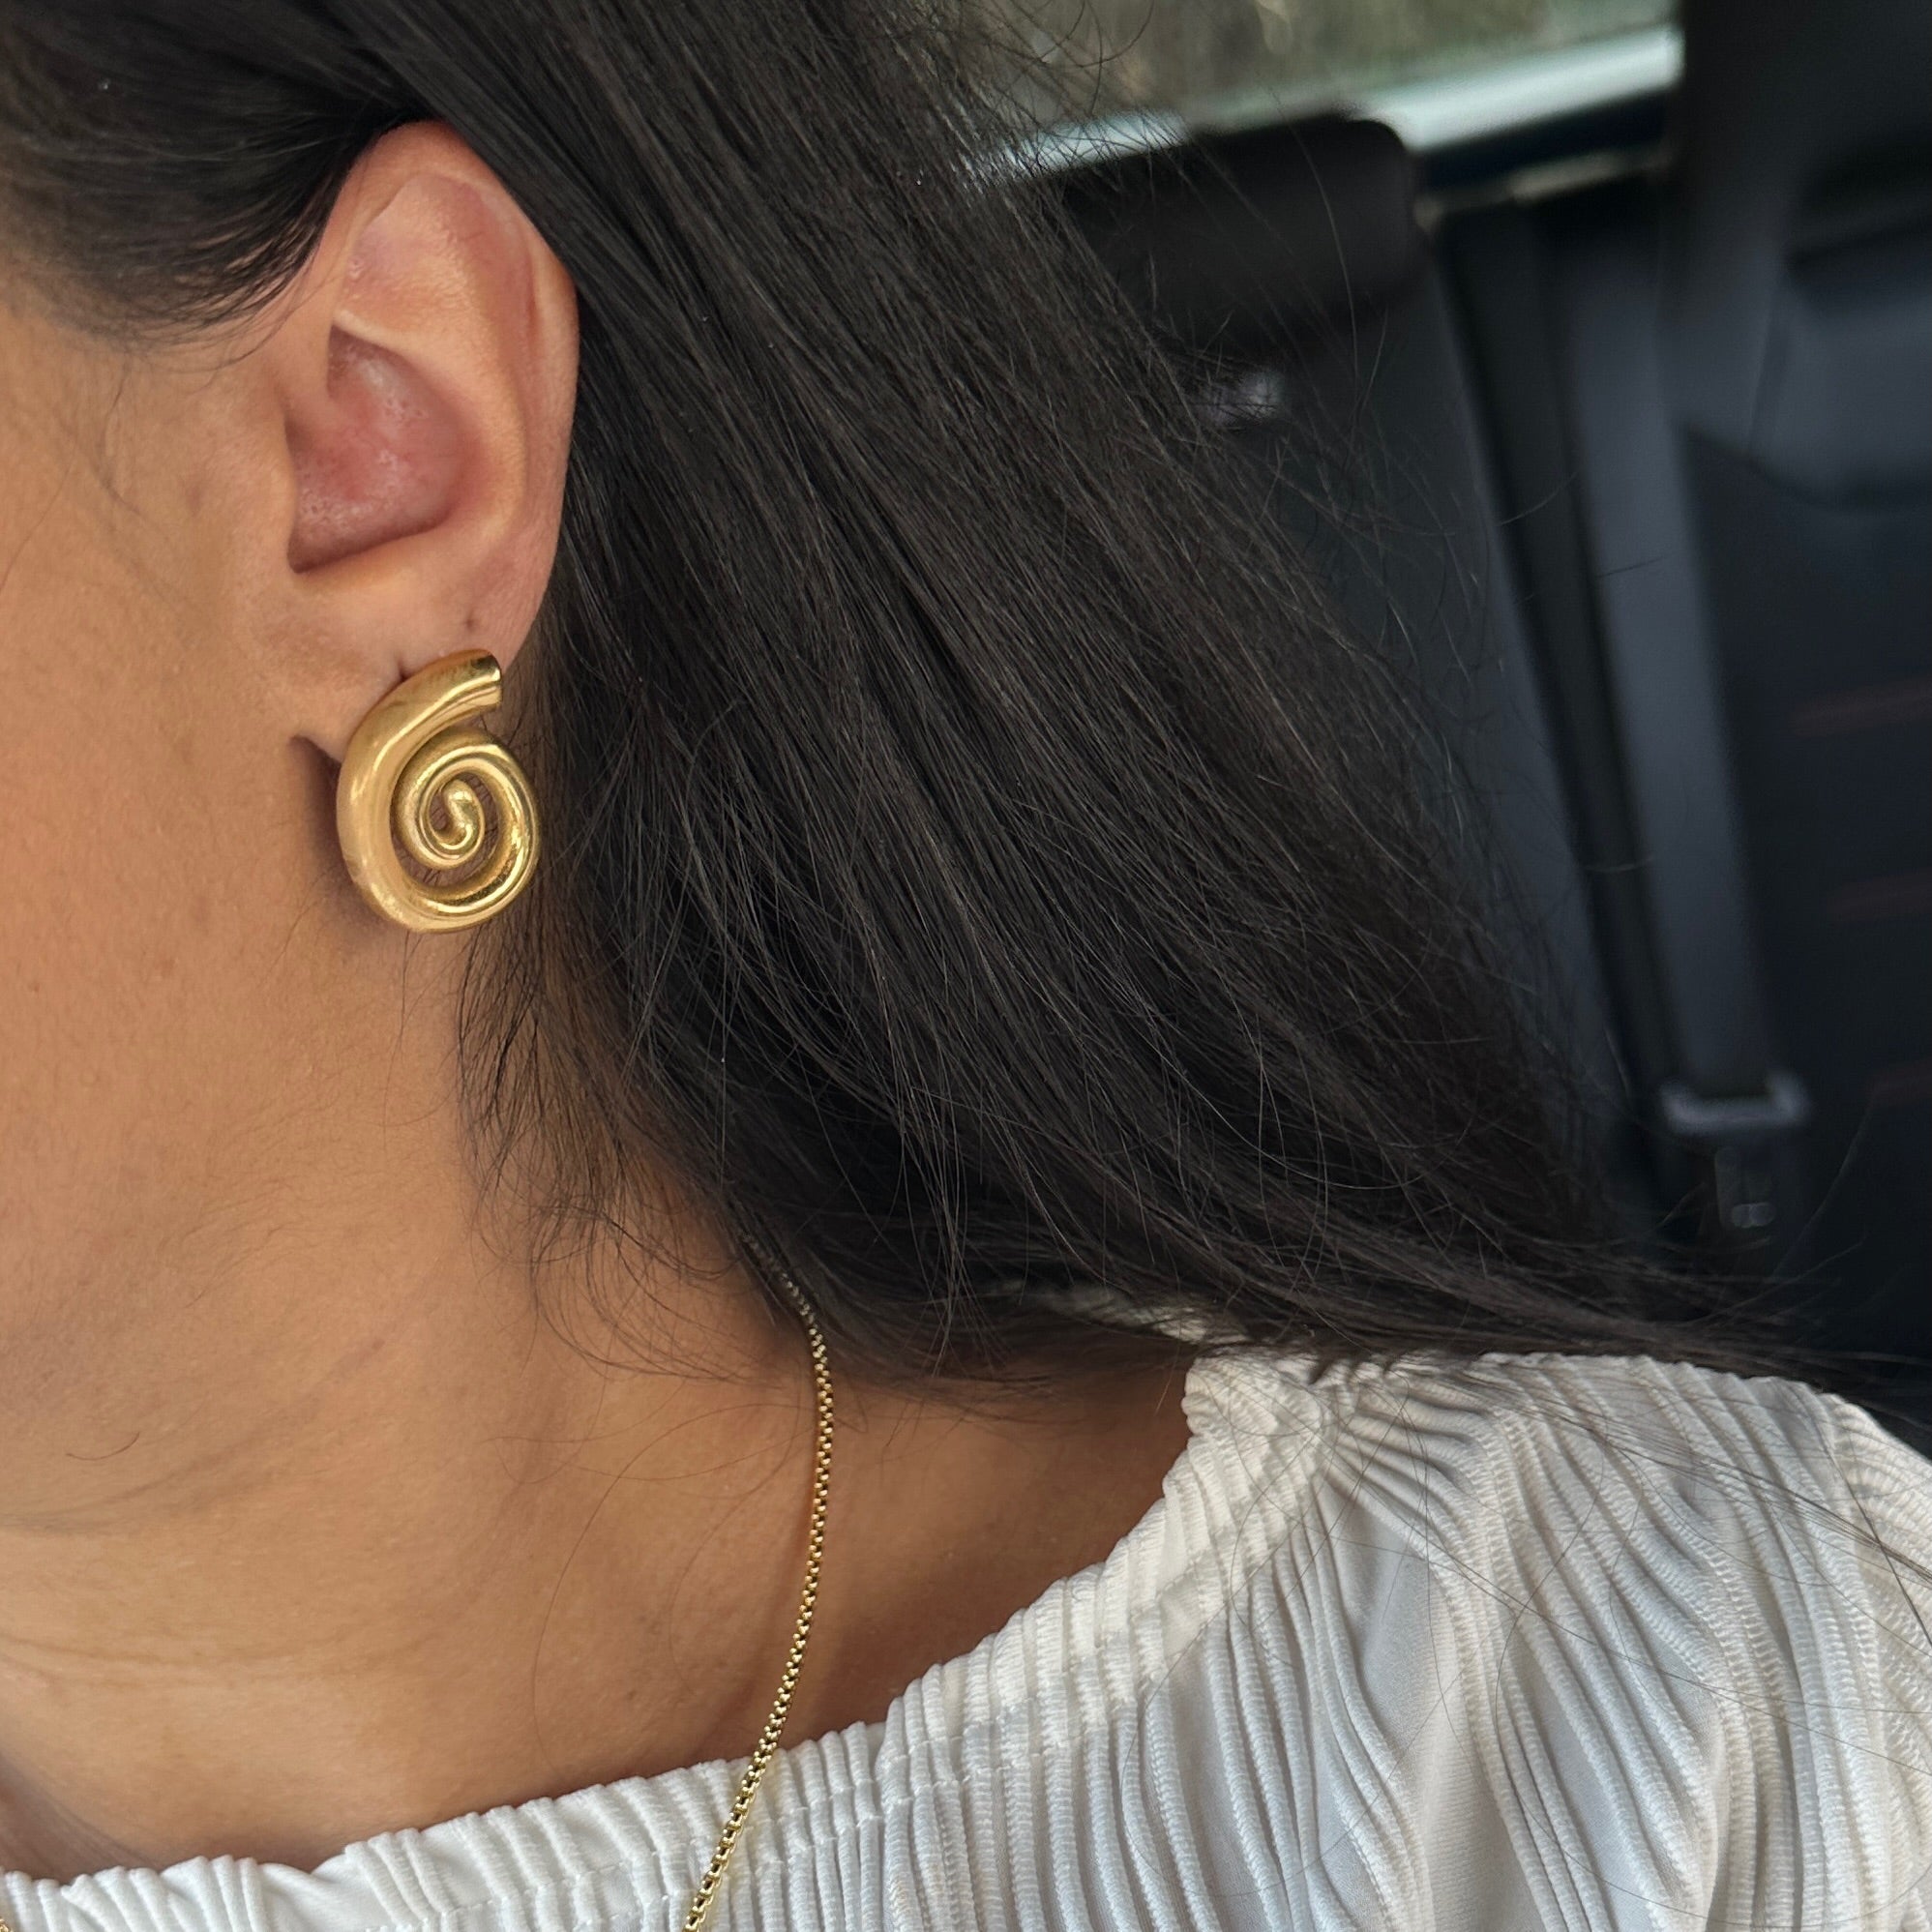 swirl earrings